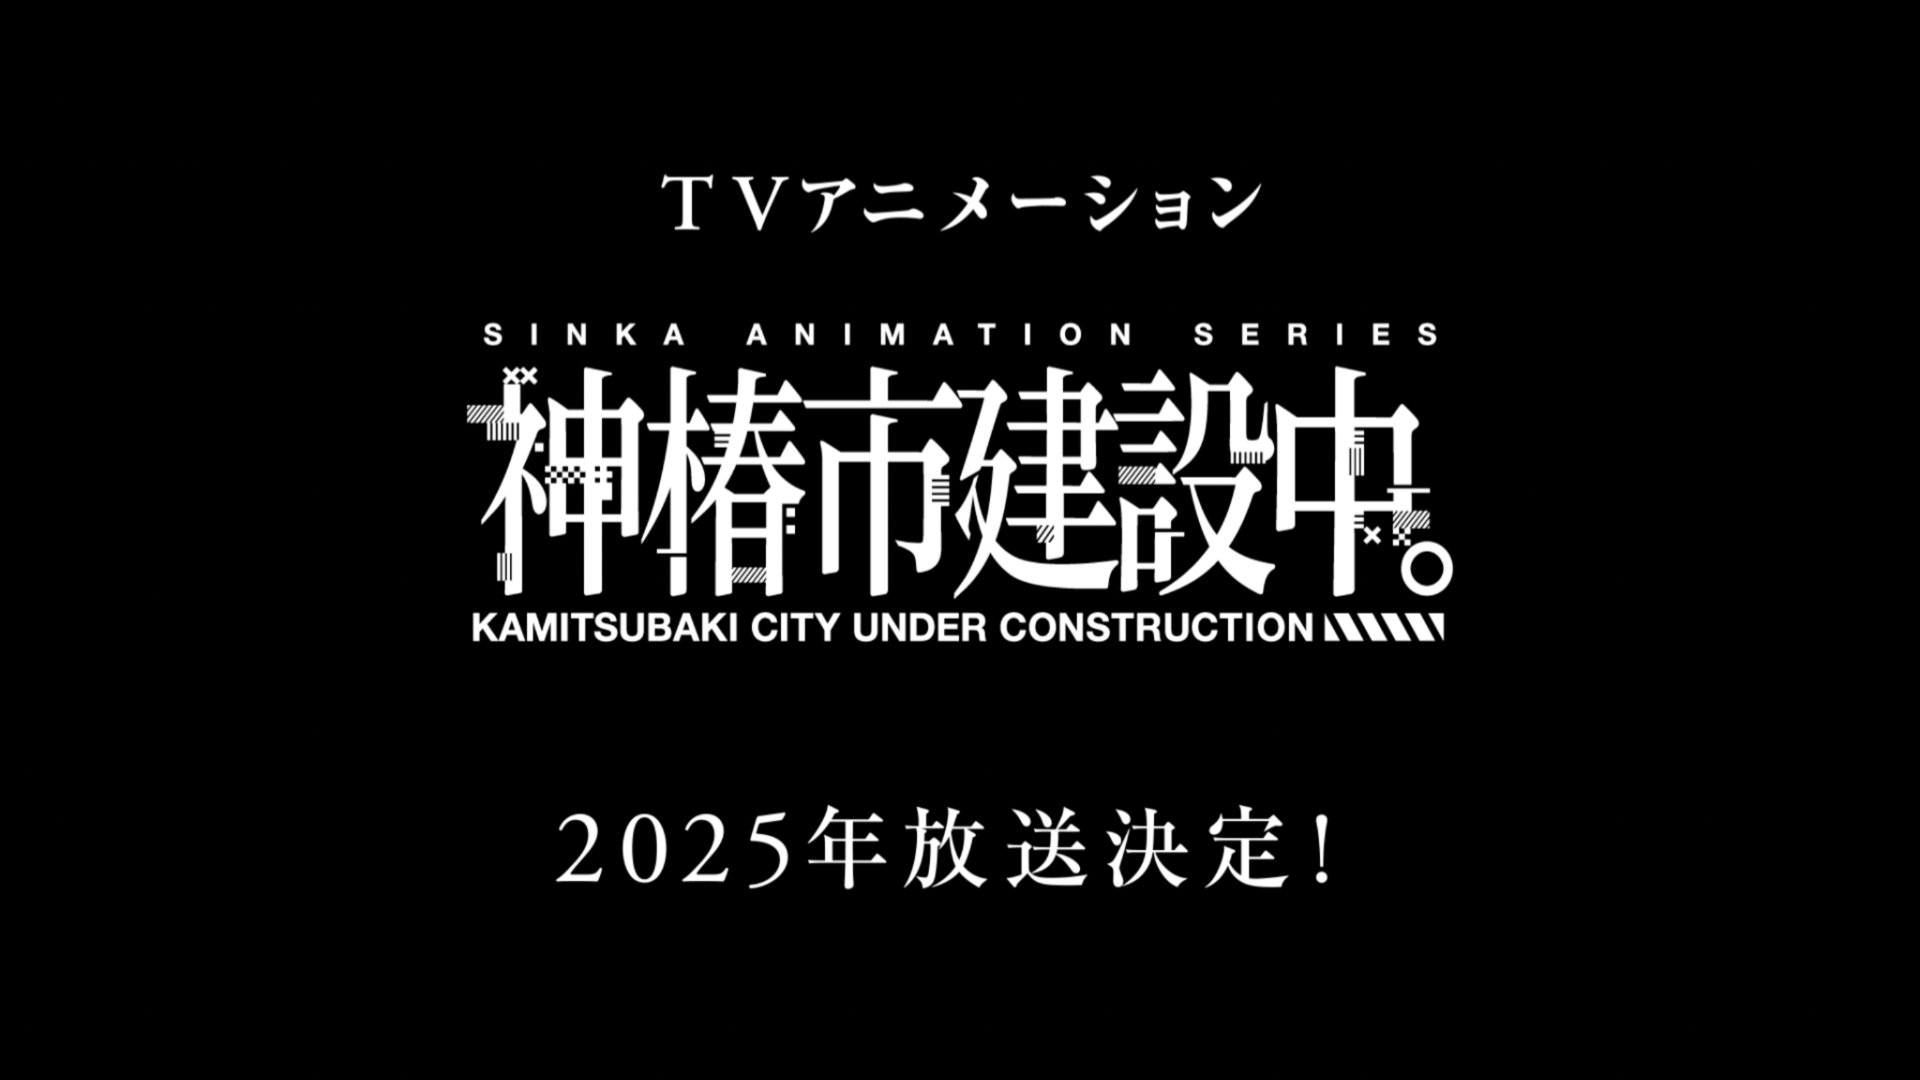 Kamitsubaki City Under Construction anime